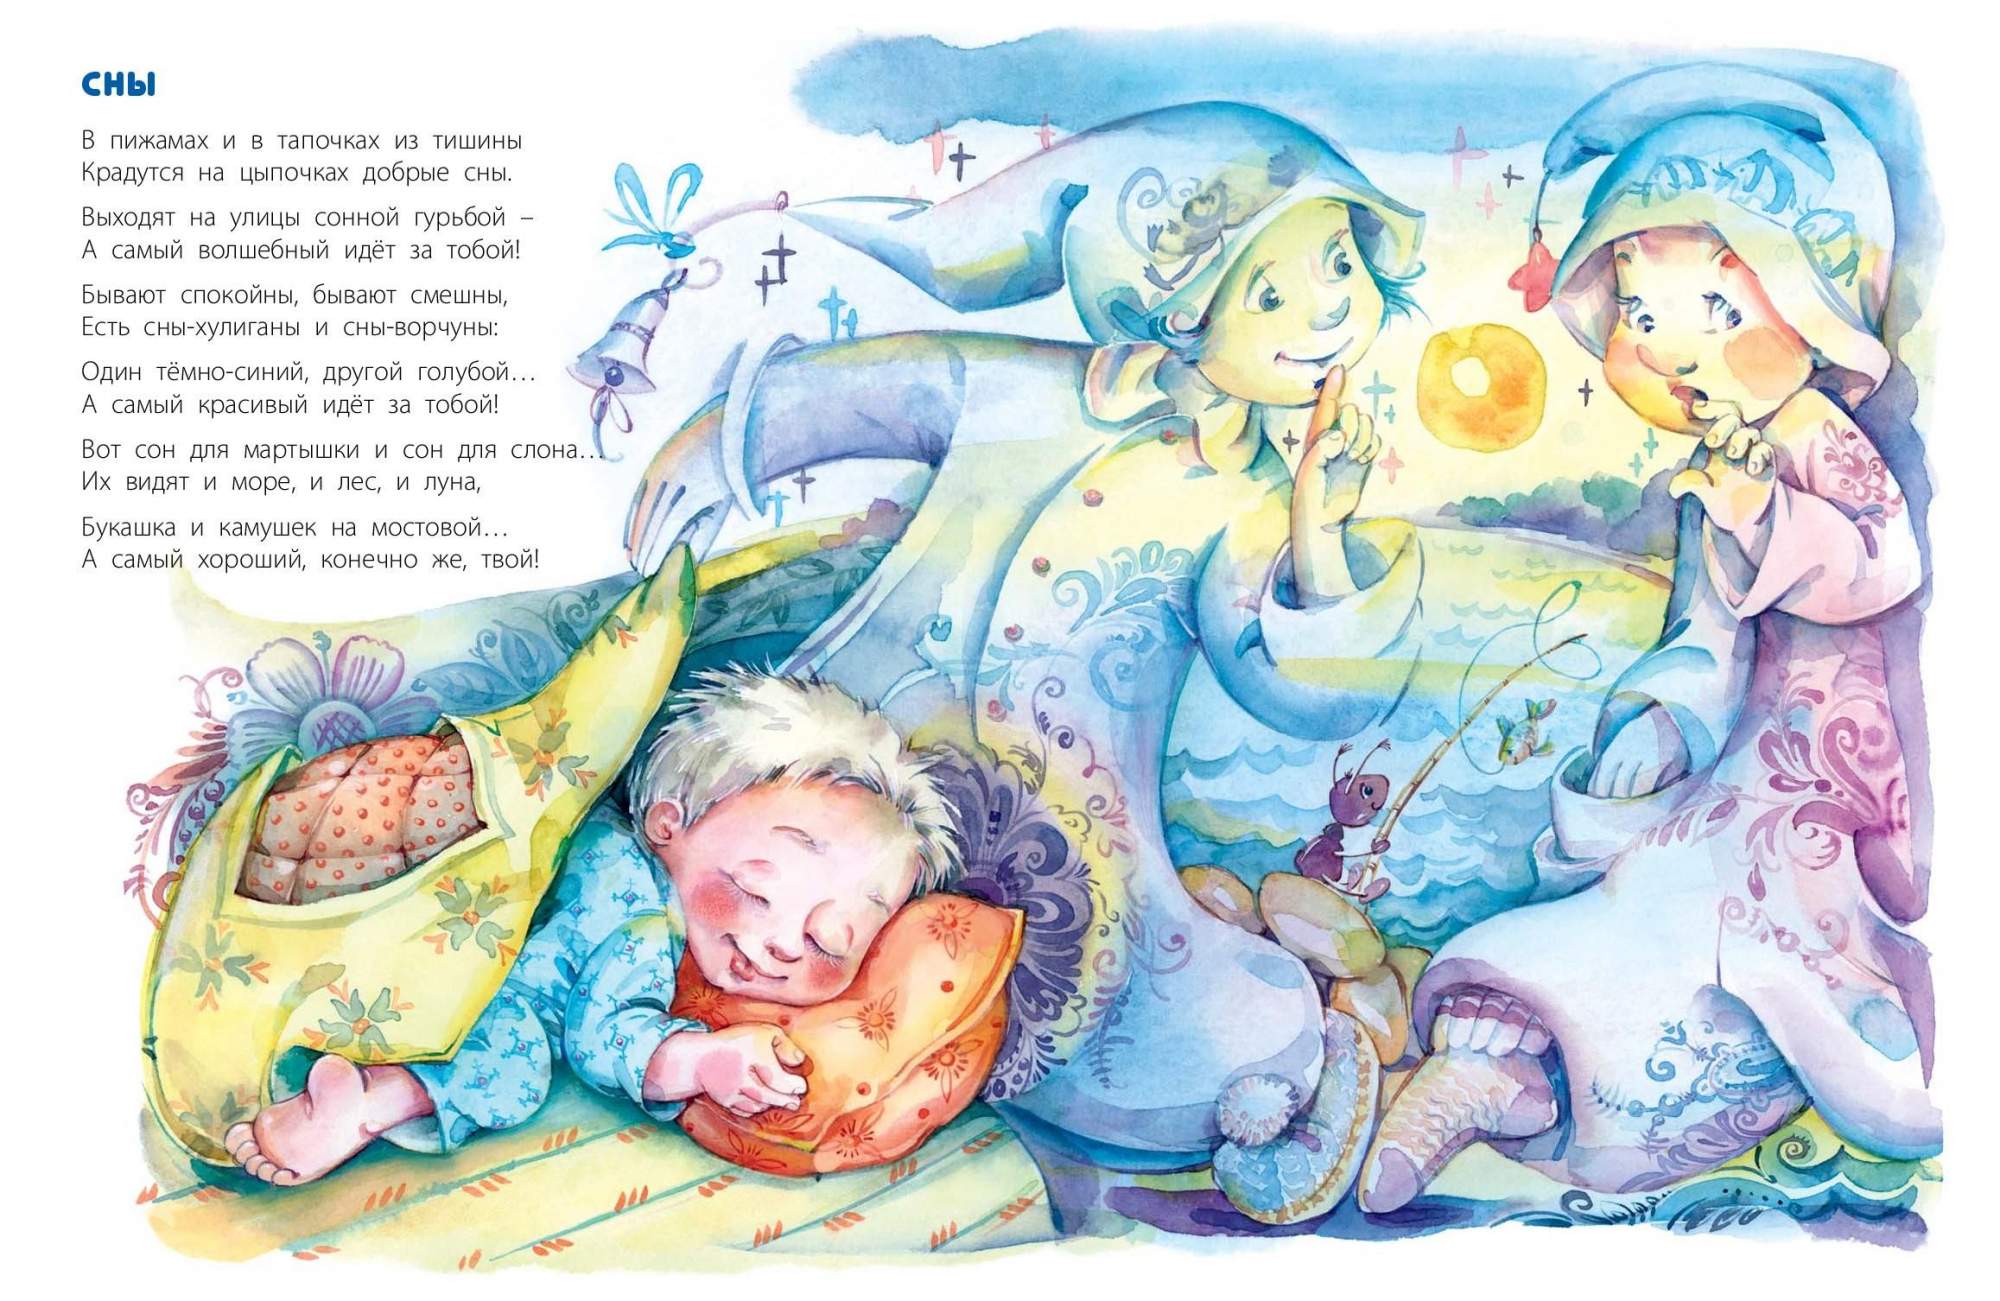 Сказка детям 4 года читать перед сном. Иллюстрации к детским книгам. Стихи про сон для детей. Сонные сказки для детей.